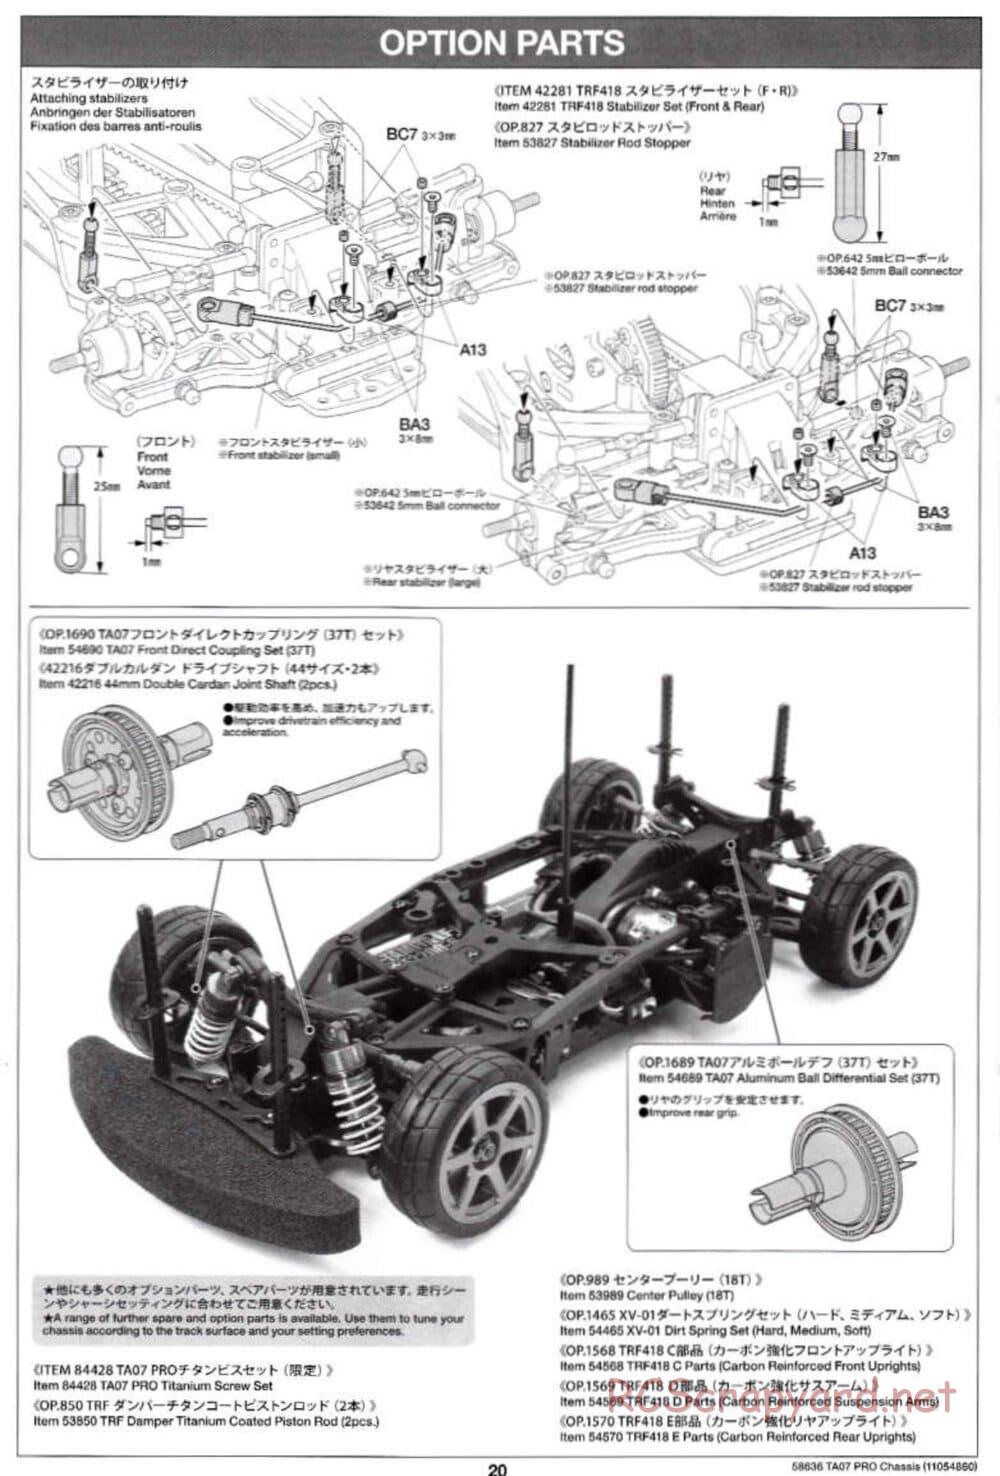 Tamiya - TA07 Pro Chassis - Manual - Page 20